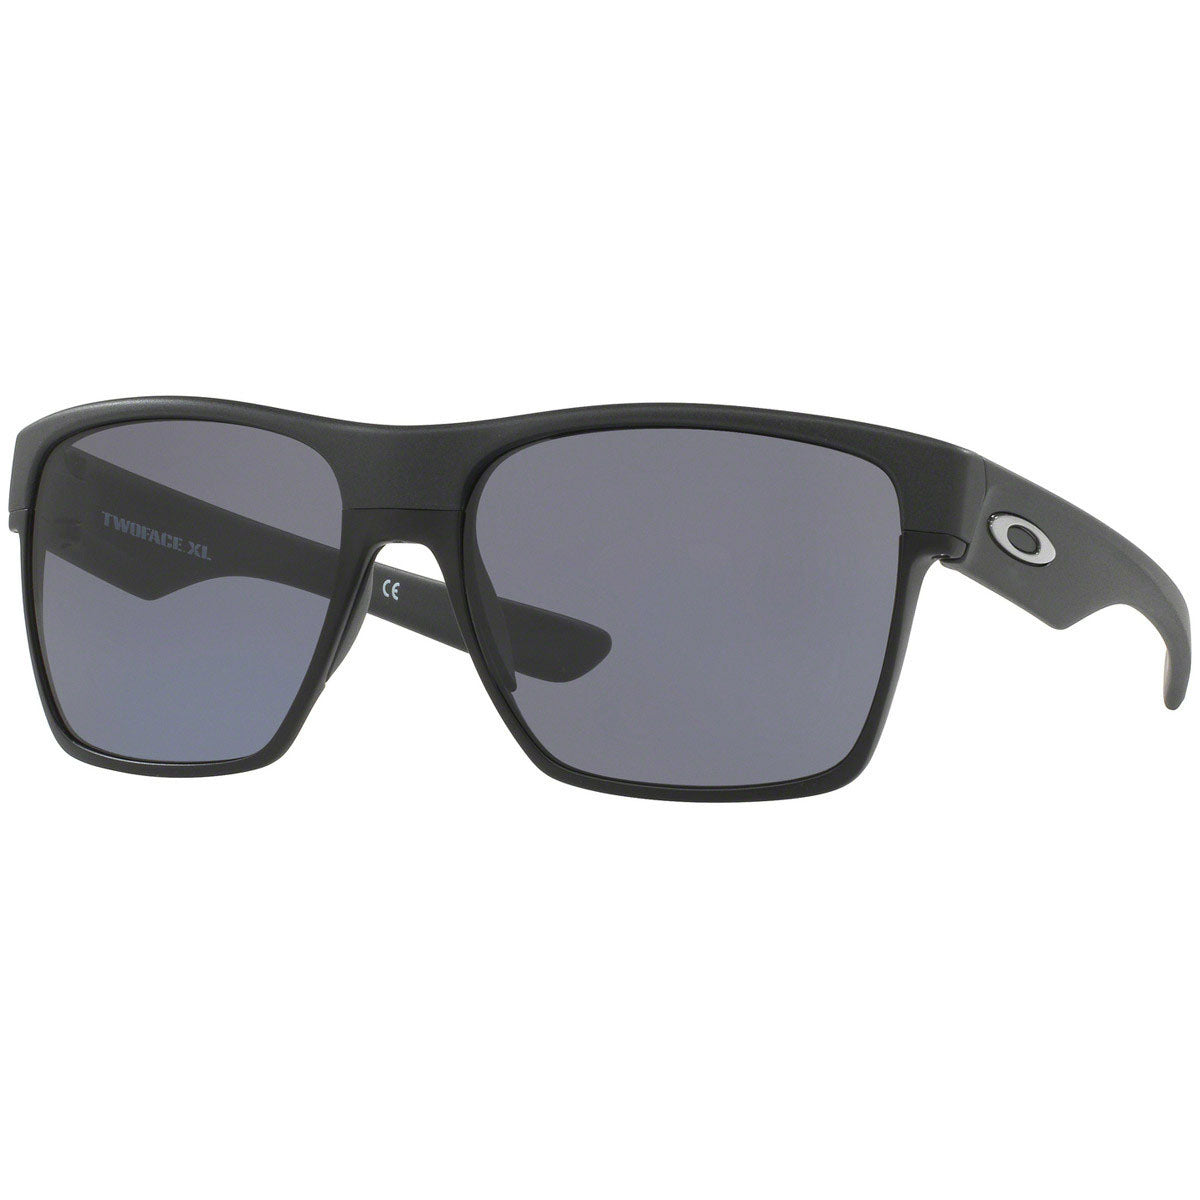 Oakley Two Face XL Sunglasses - Steel / Grey Lens - OO9350-03